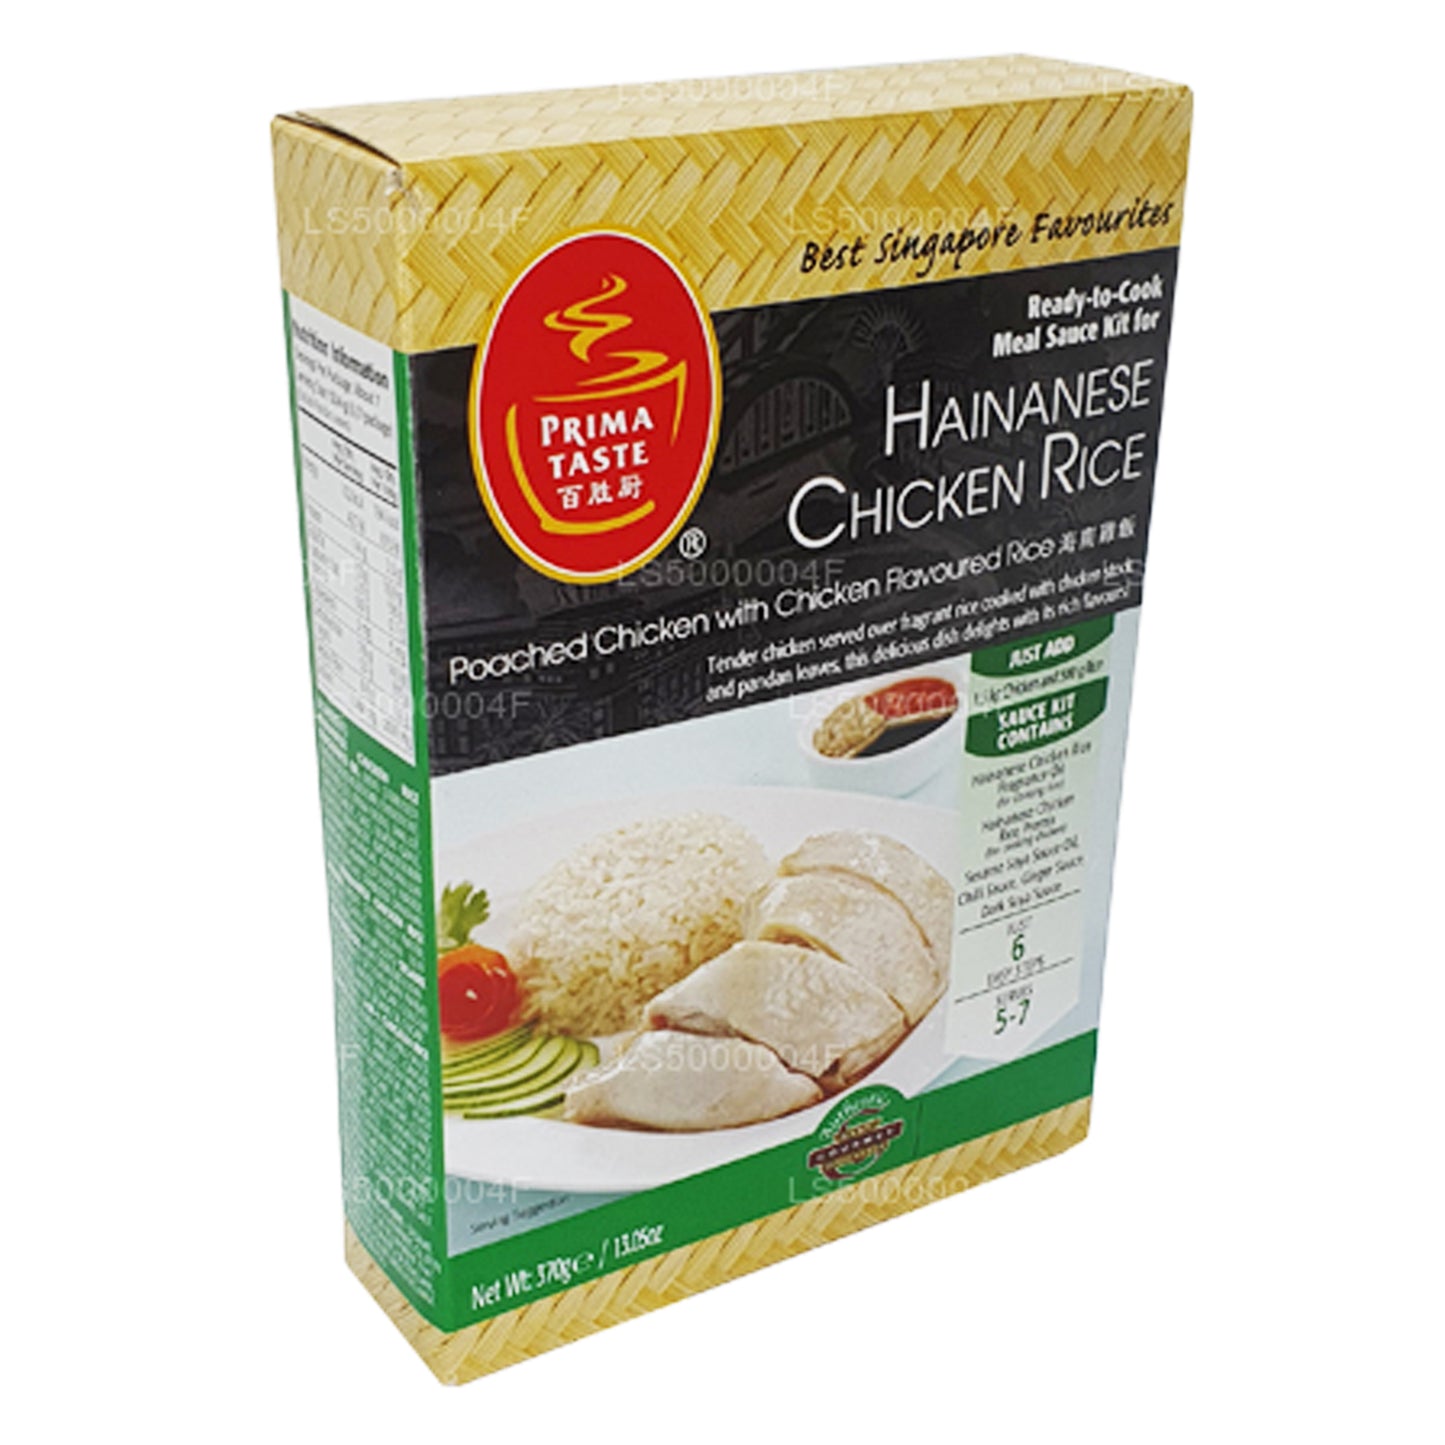 Prima Taste Hainanesischer Hühnerreis (370 g)